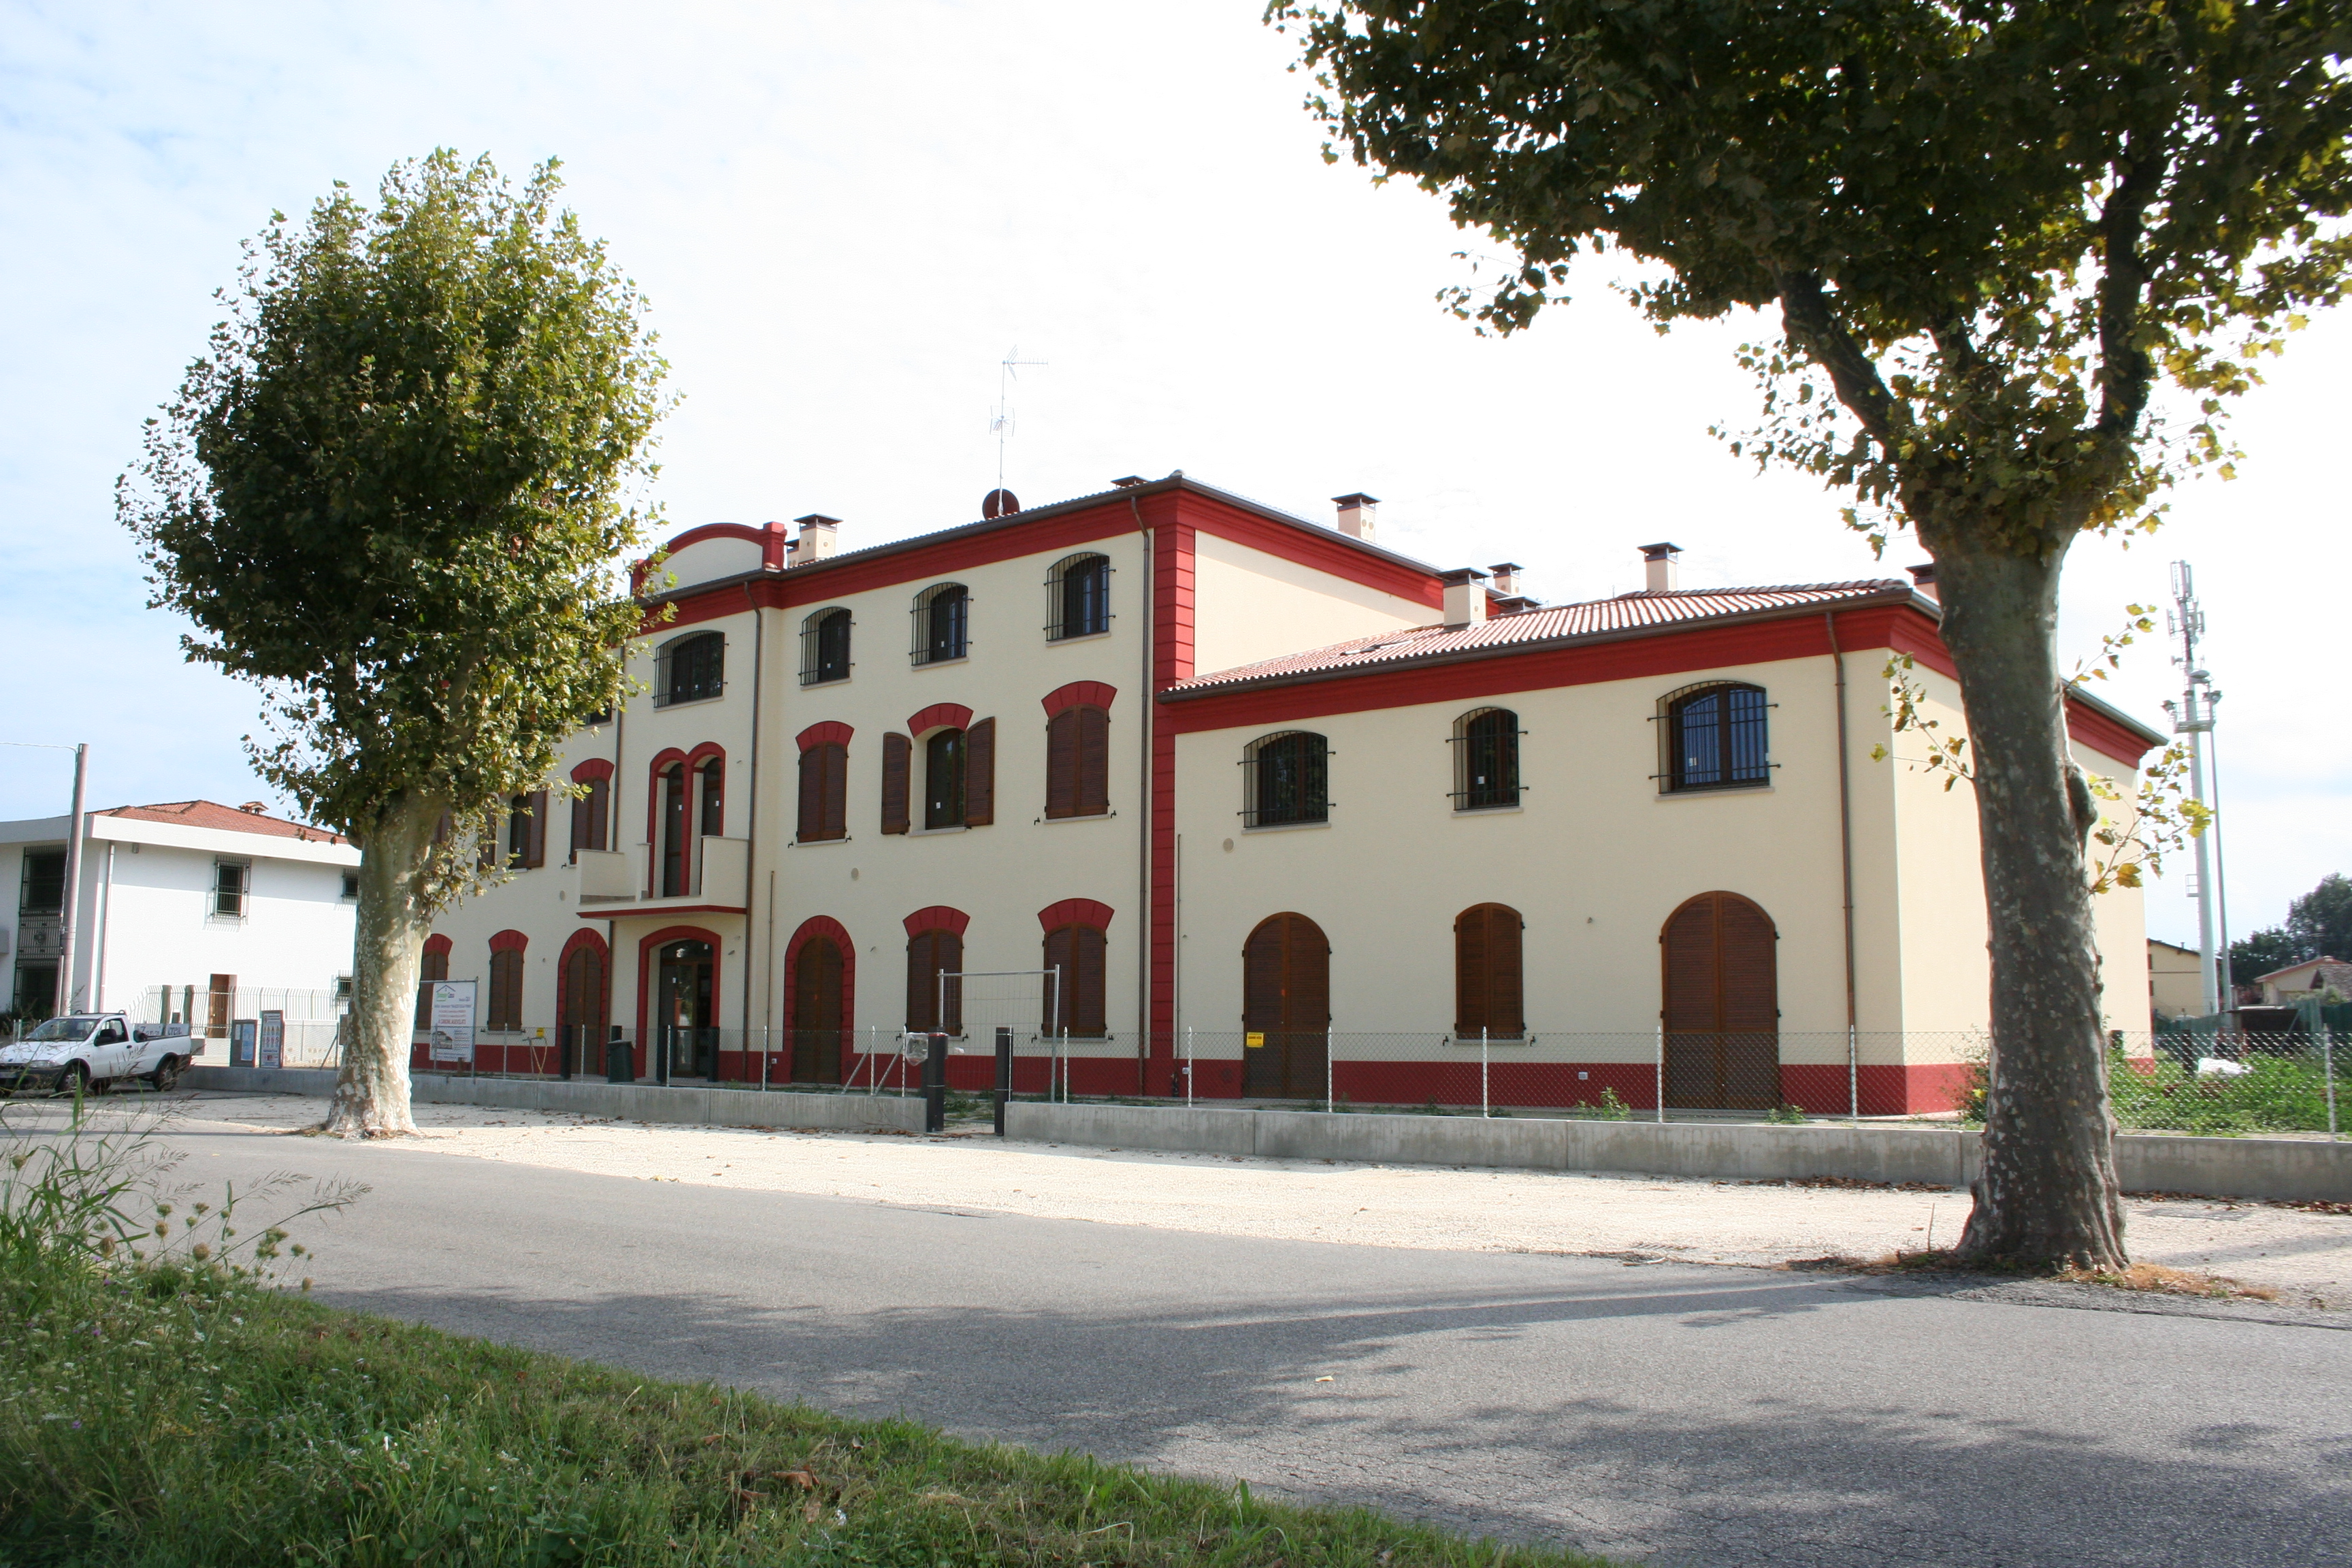 San Pancrazio di Russi (RA), Via G. Randi "Palazzo della Penna"